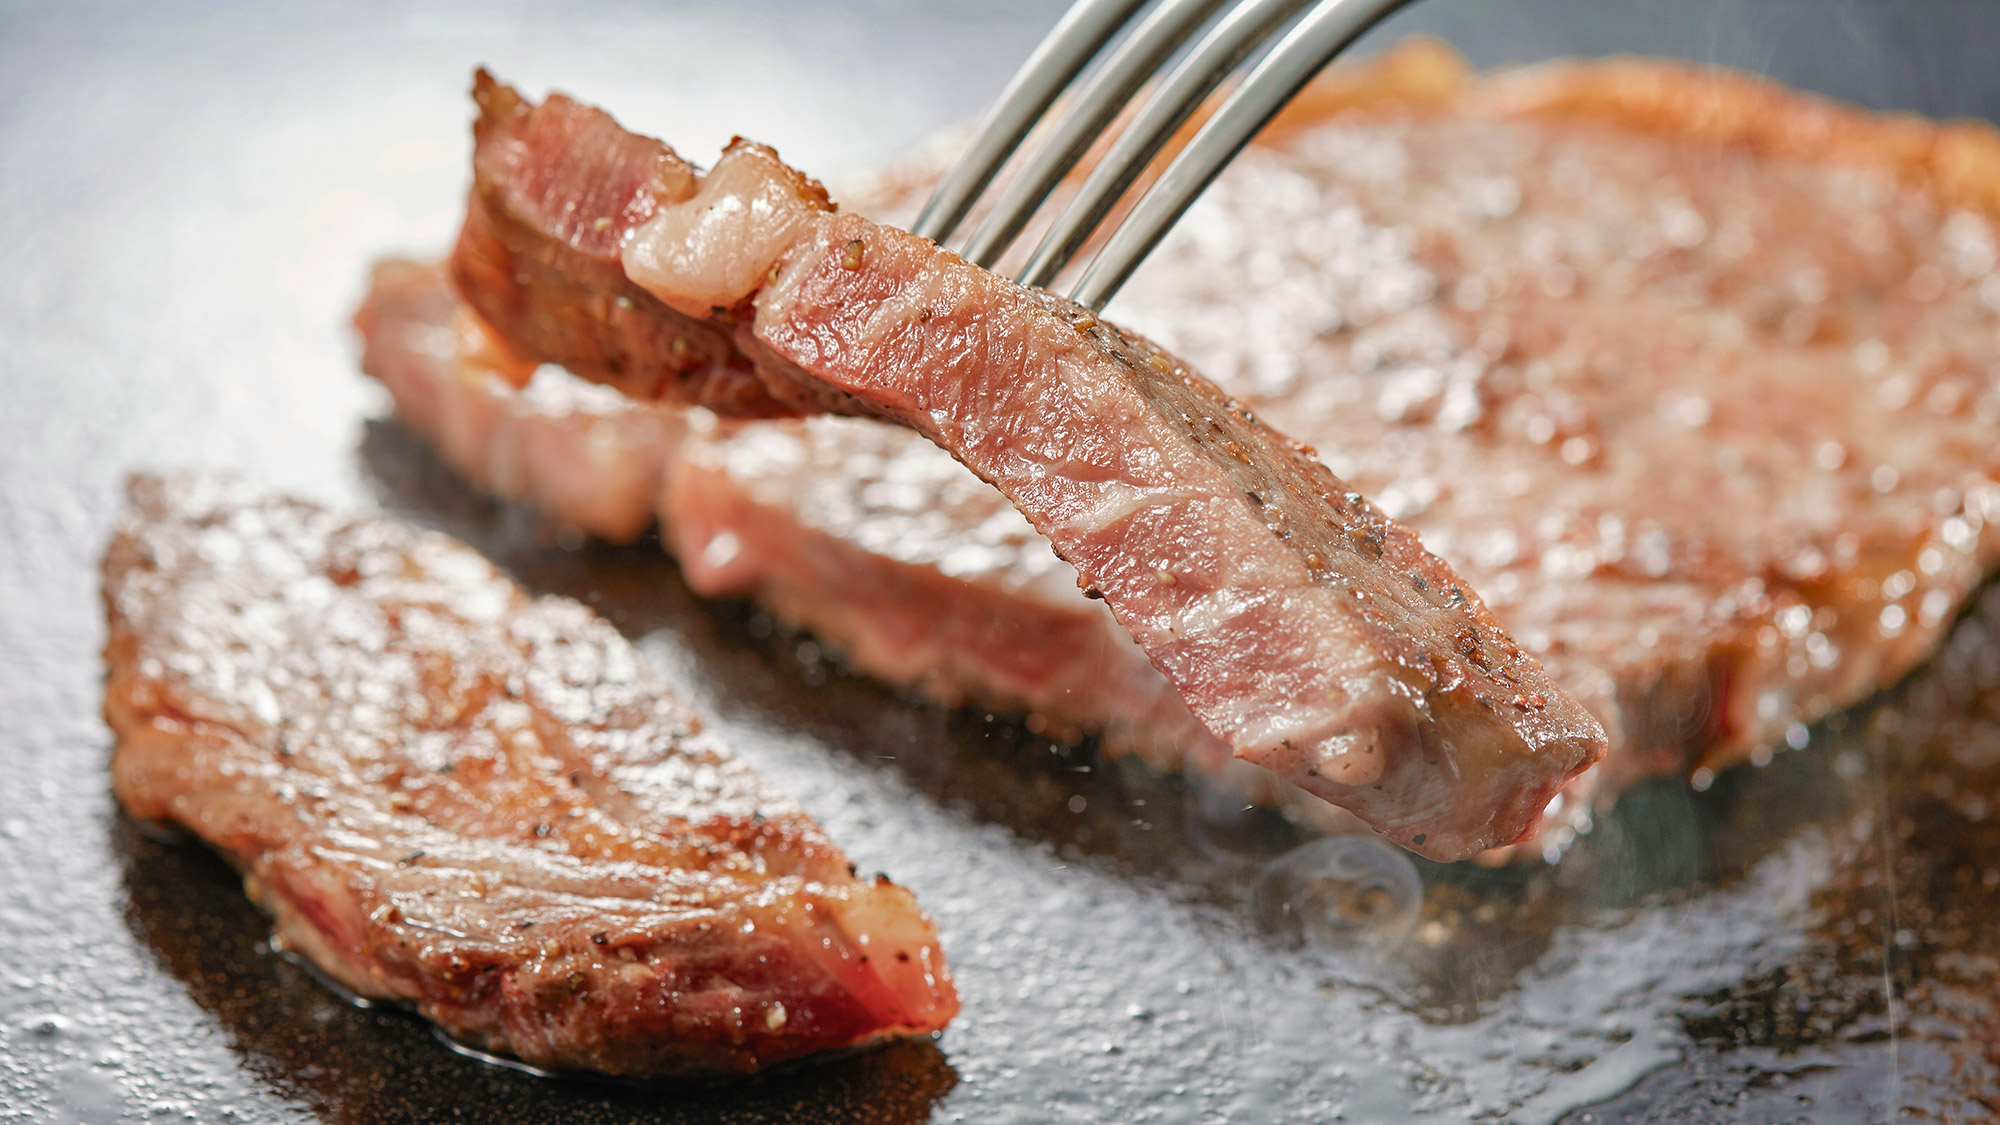 ステーキ※ステーキは調味牛脂を注入した加工肉です。